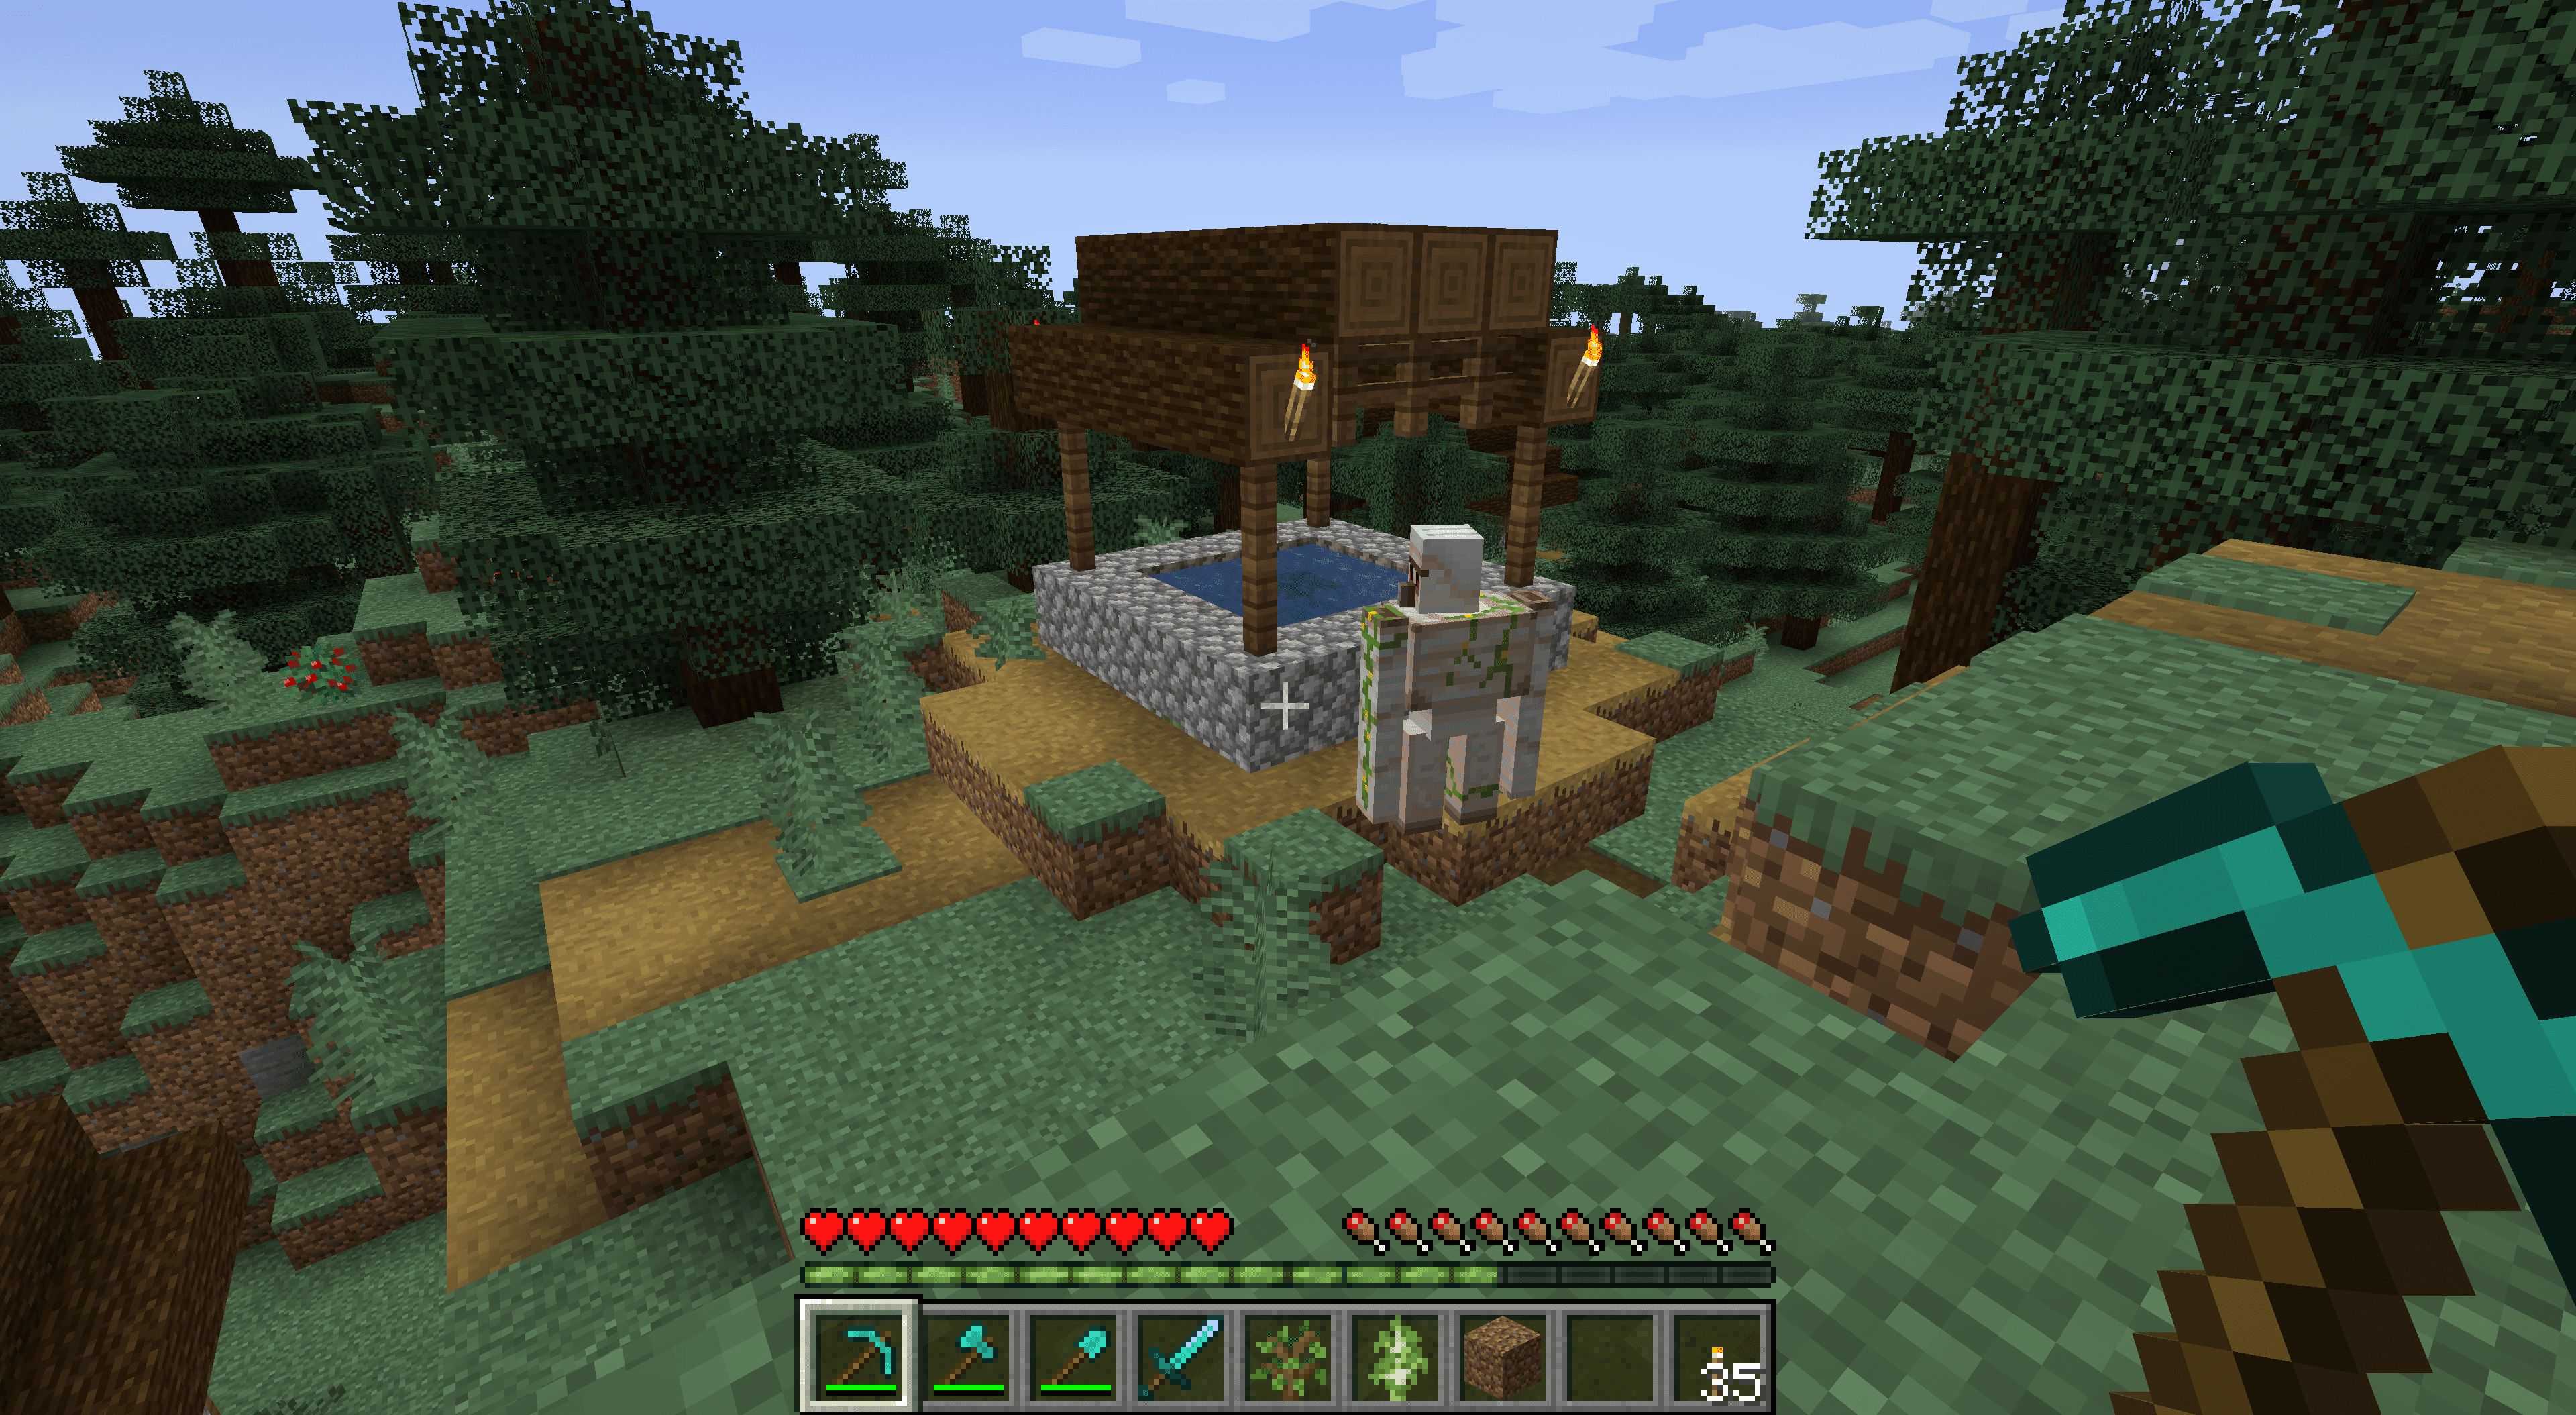 En järngolem i en by i Minecraft.